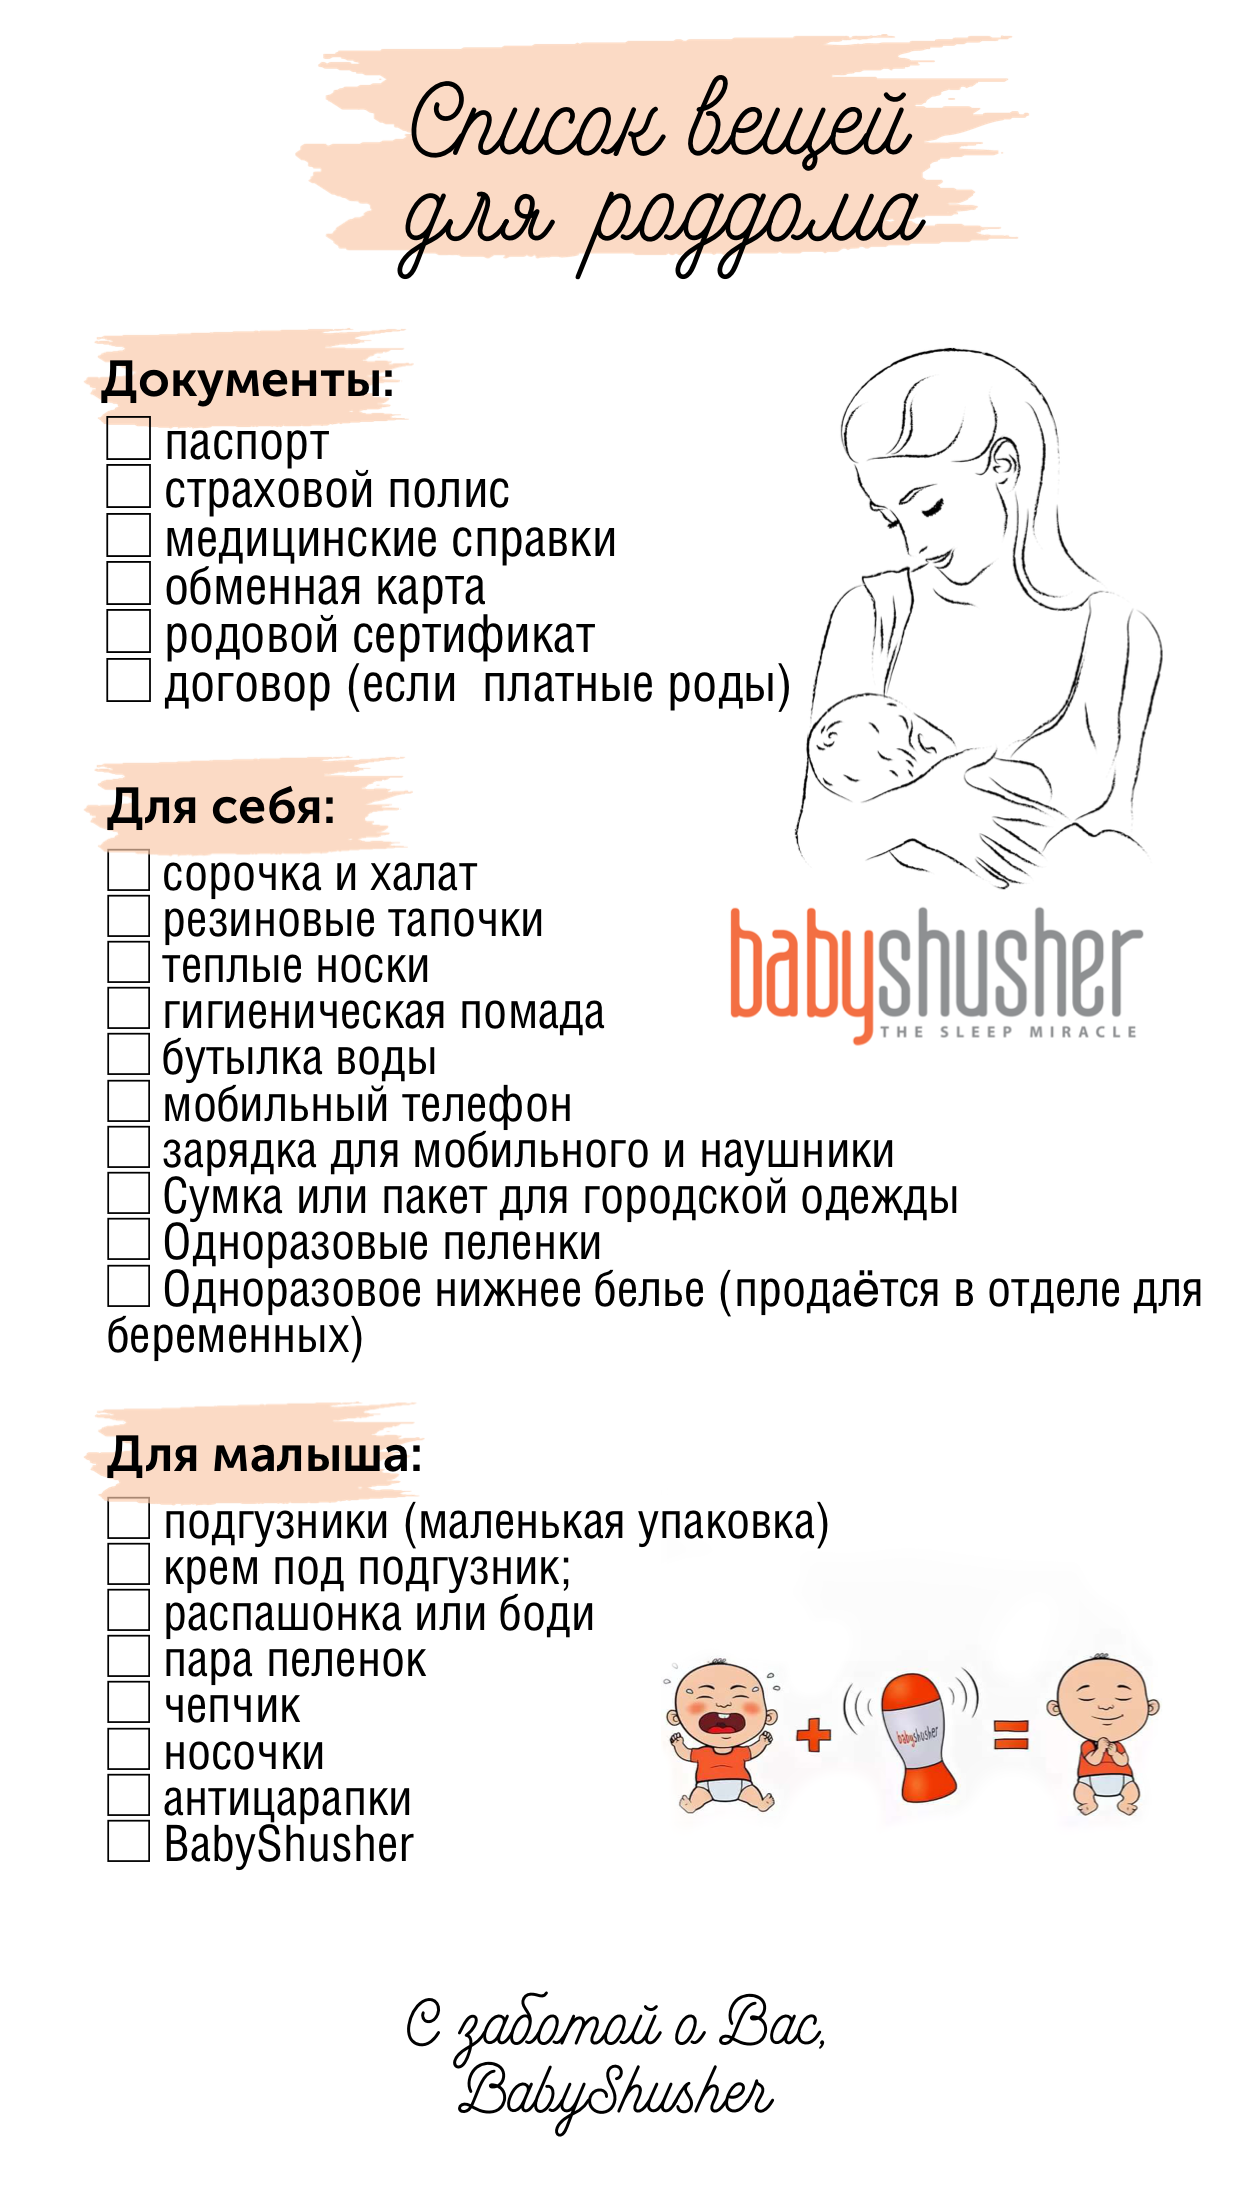 Сумка в роддом: список для мамы и малыша 2021, сентябрь, октябрь, ноябрь, декабрь, когда собирать, прозрачная сумка